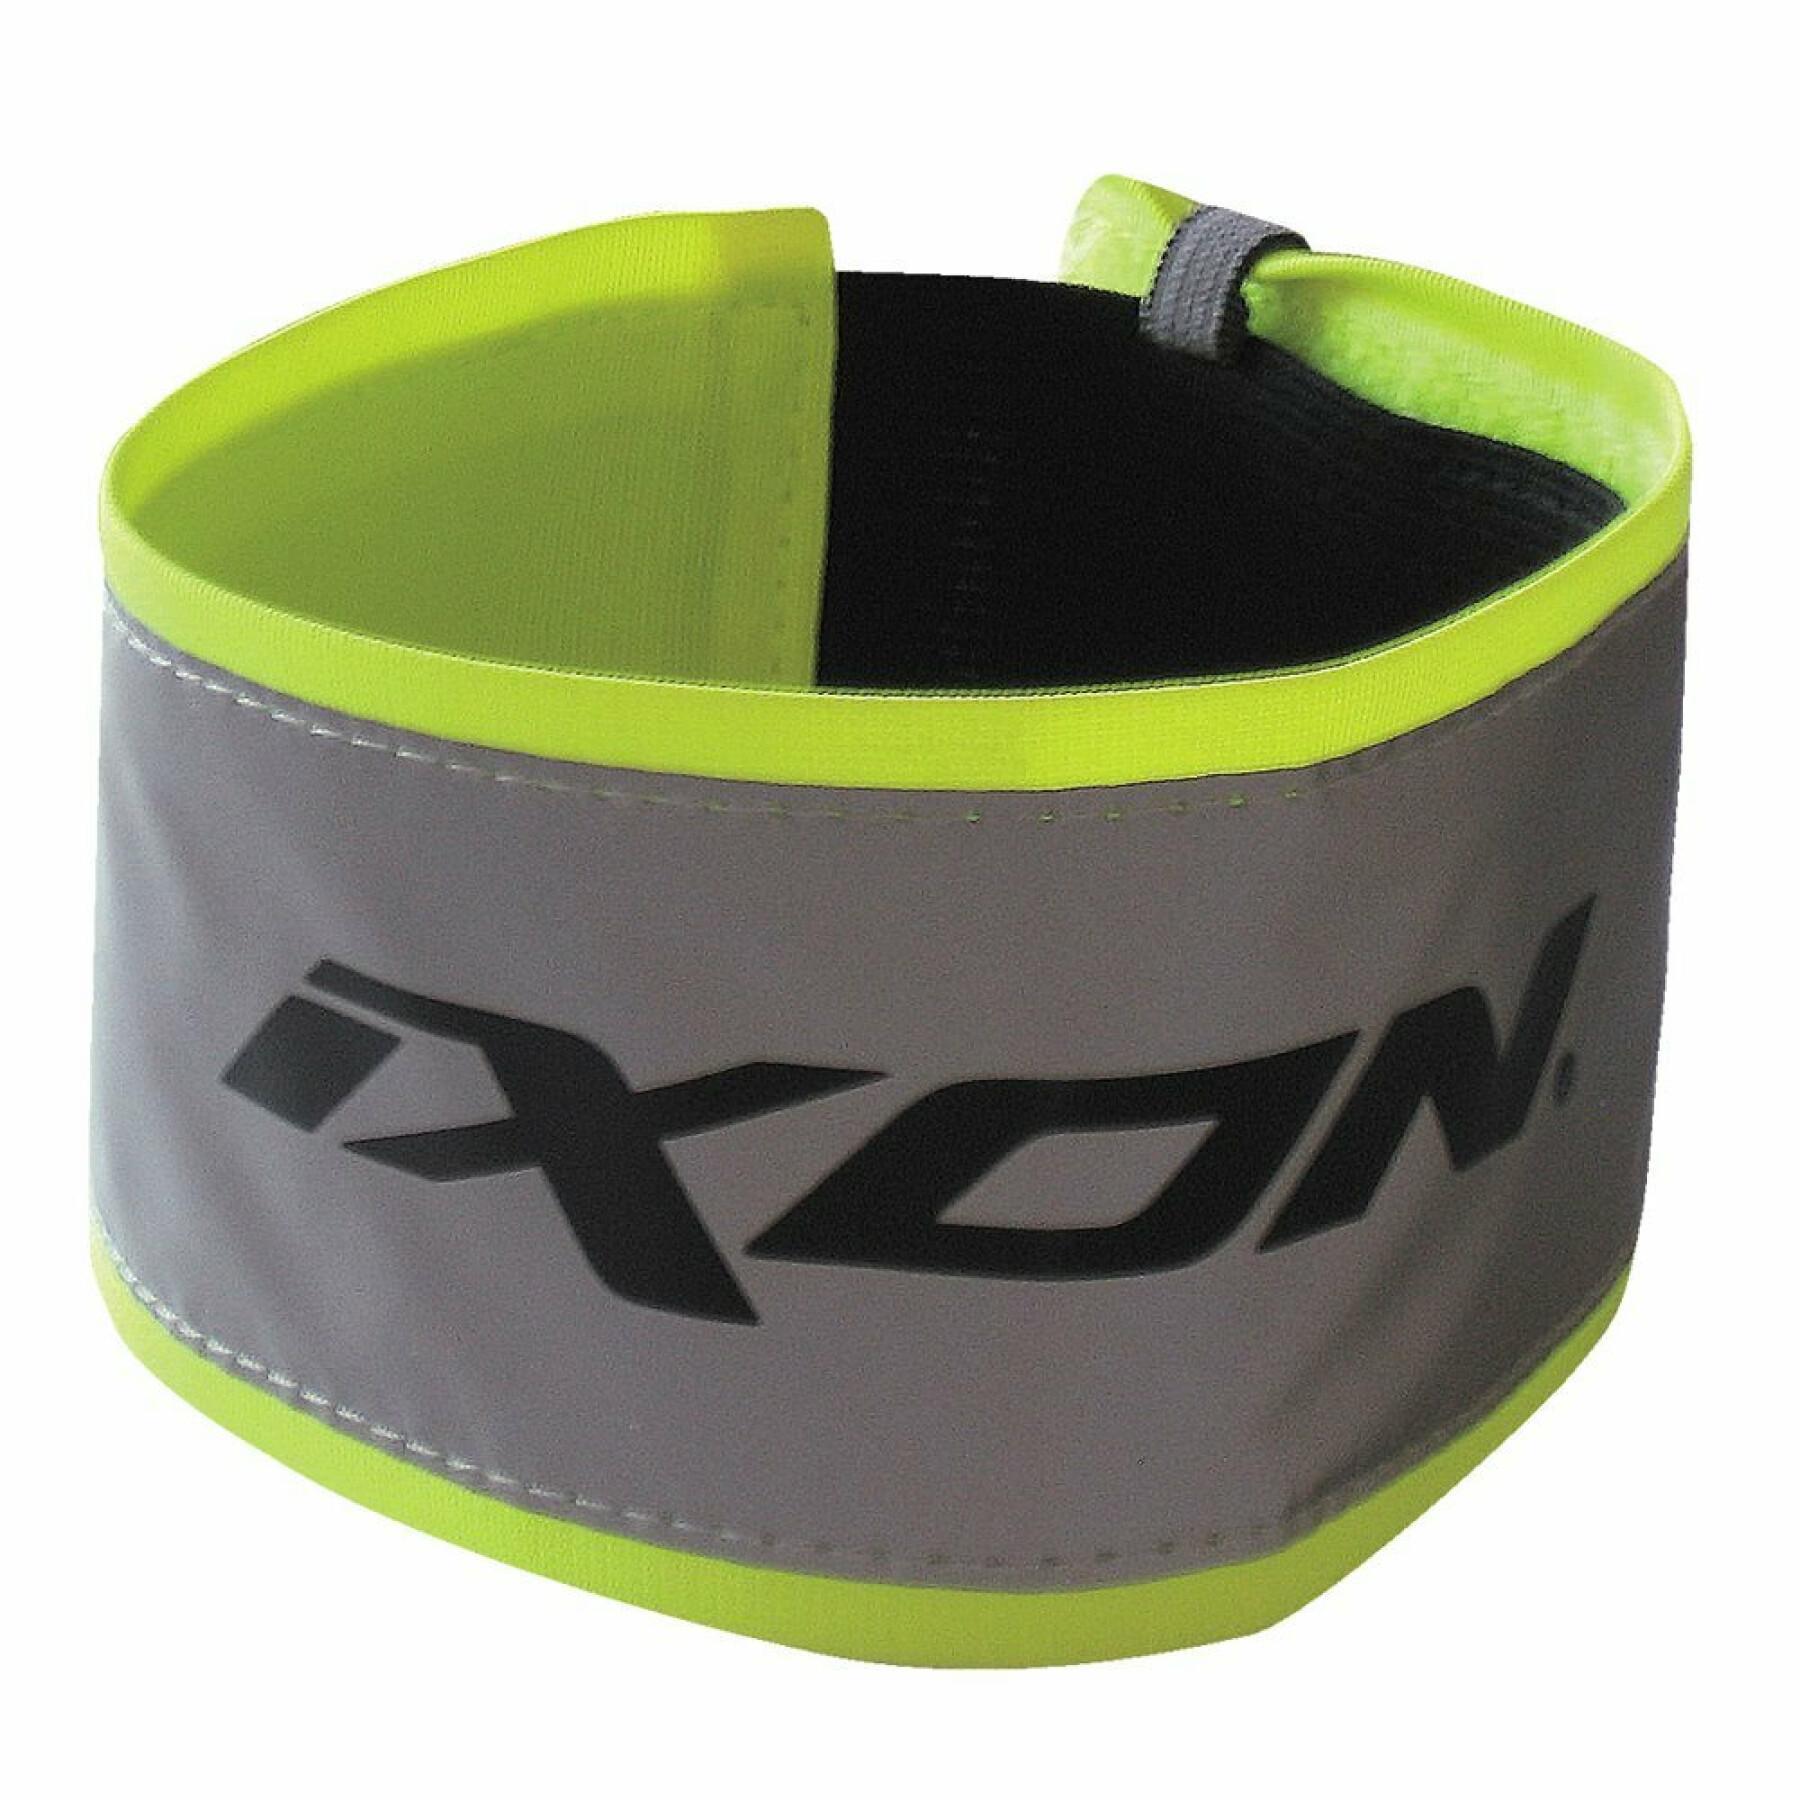 Visibility armband Ixon brace